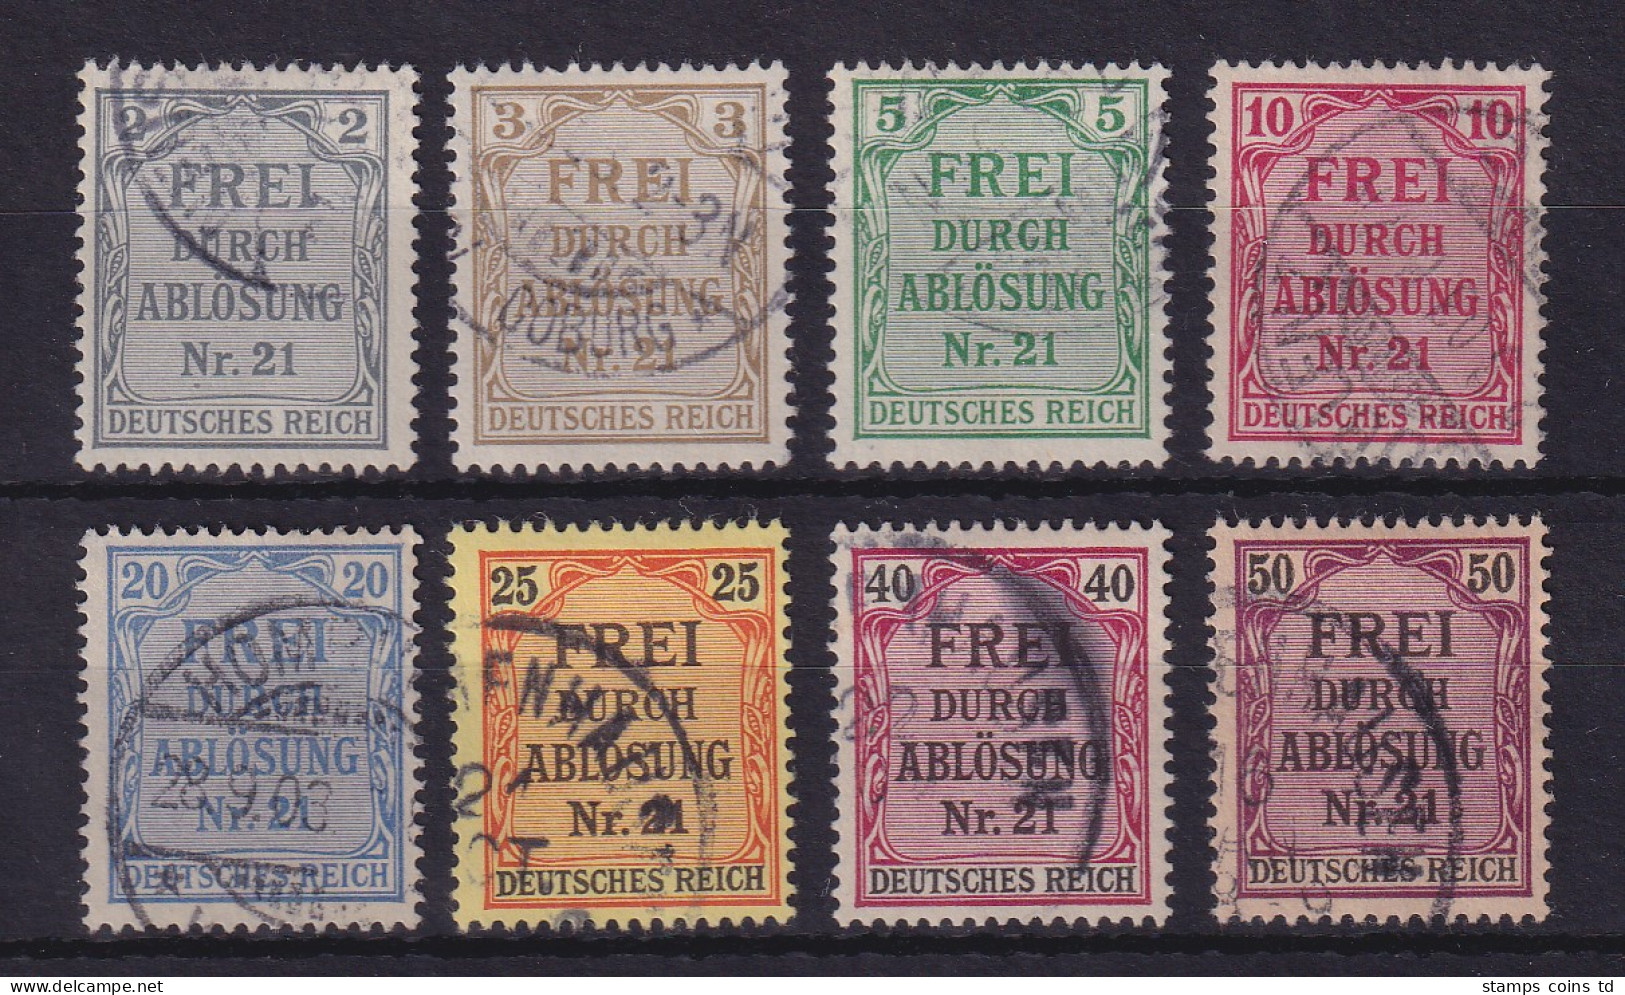 Dt. Reich 1903 Dienstmarken Für Preußen  Mi.-Nr. 1-8 Gestempelt - Officials